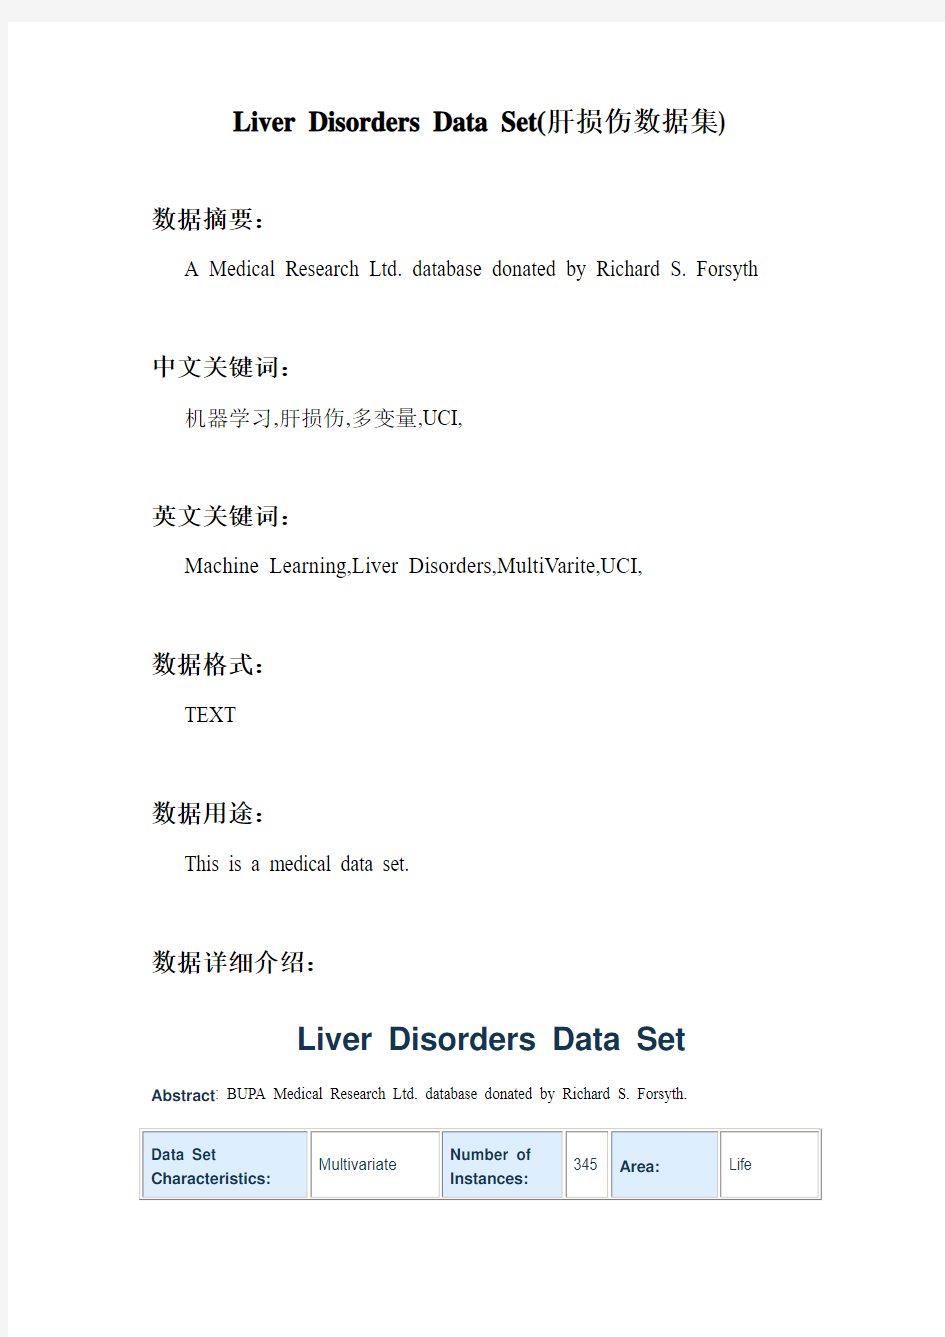 机器学习_Liver Disorders Data Set(肝损伤数据集)